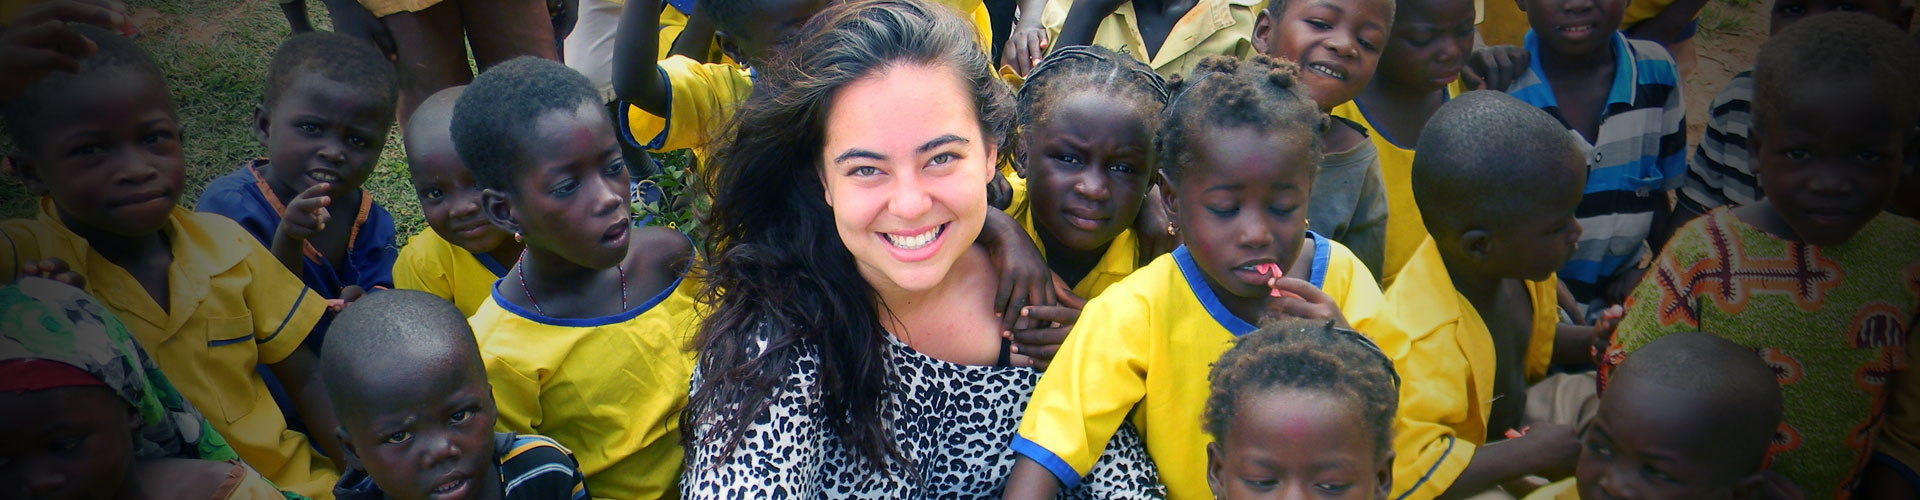 Orphanage Volunteer Program in Ghana